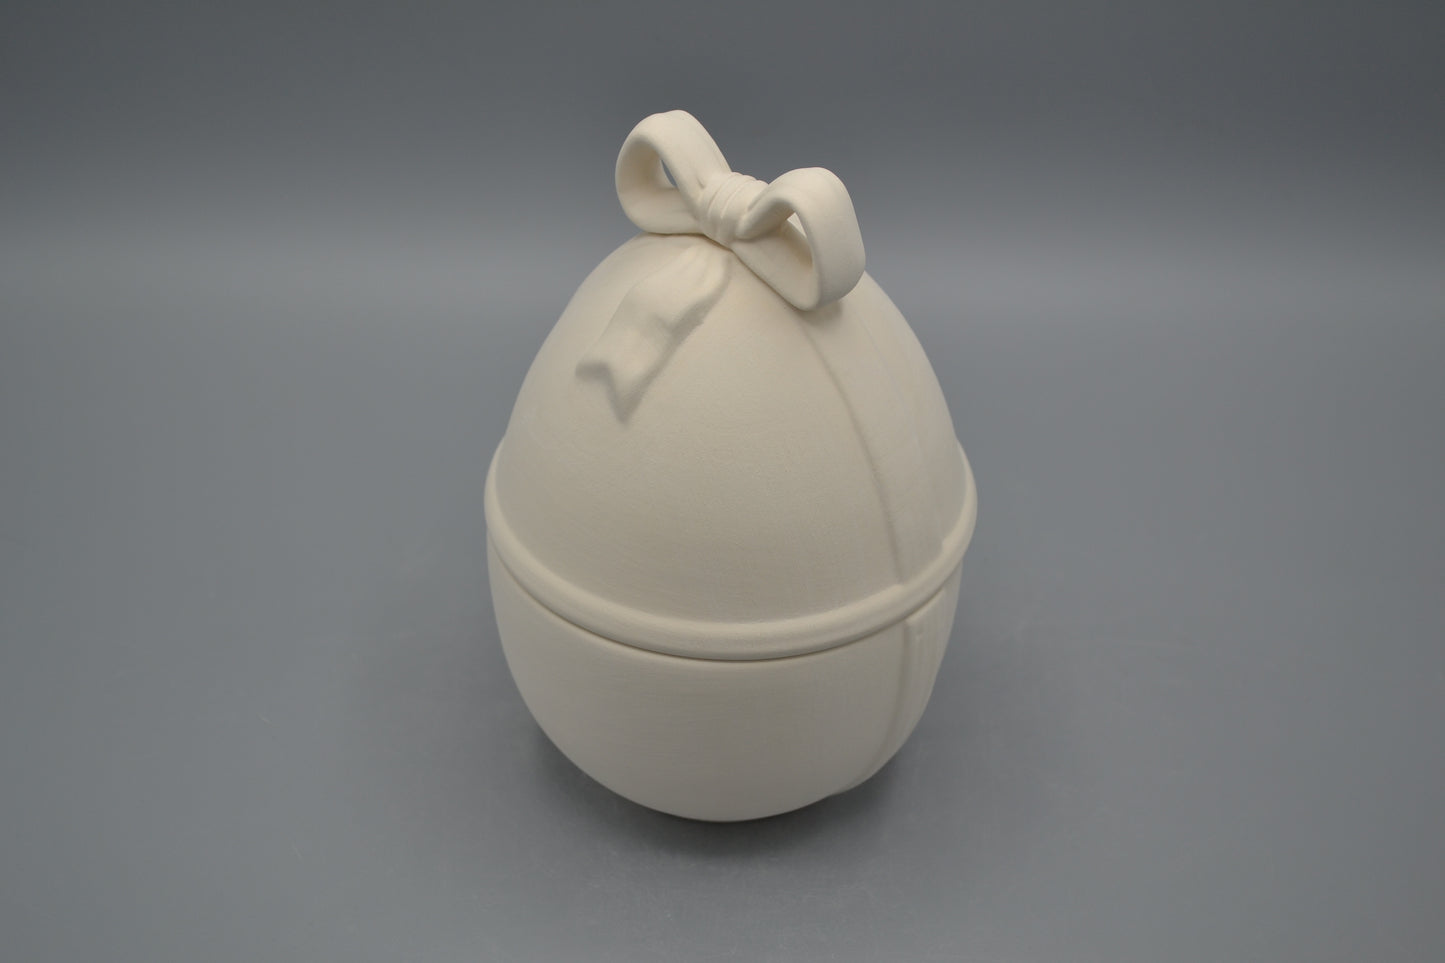 Uovo con fiocco in ceramica semilavorata GREZZA da dipingere